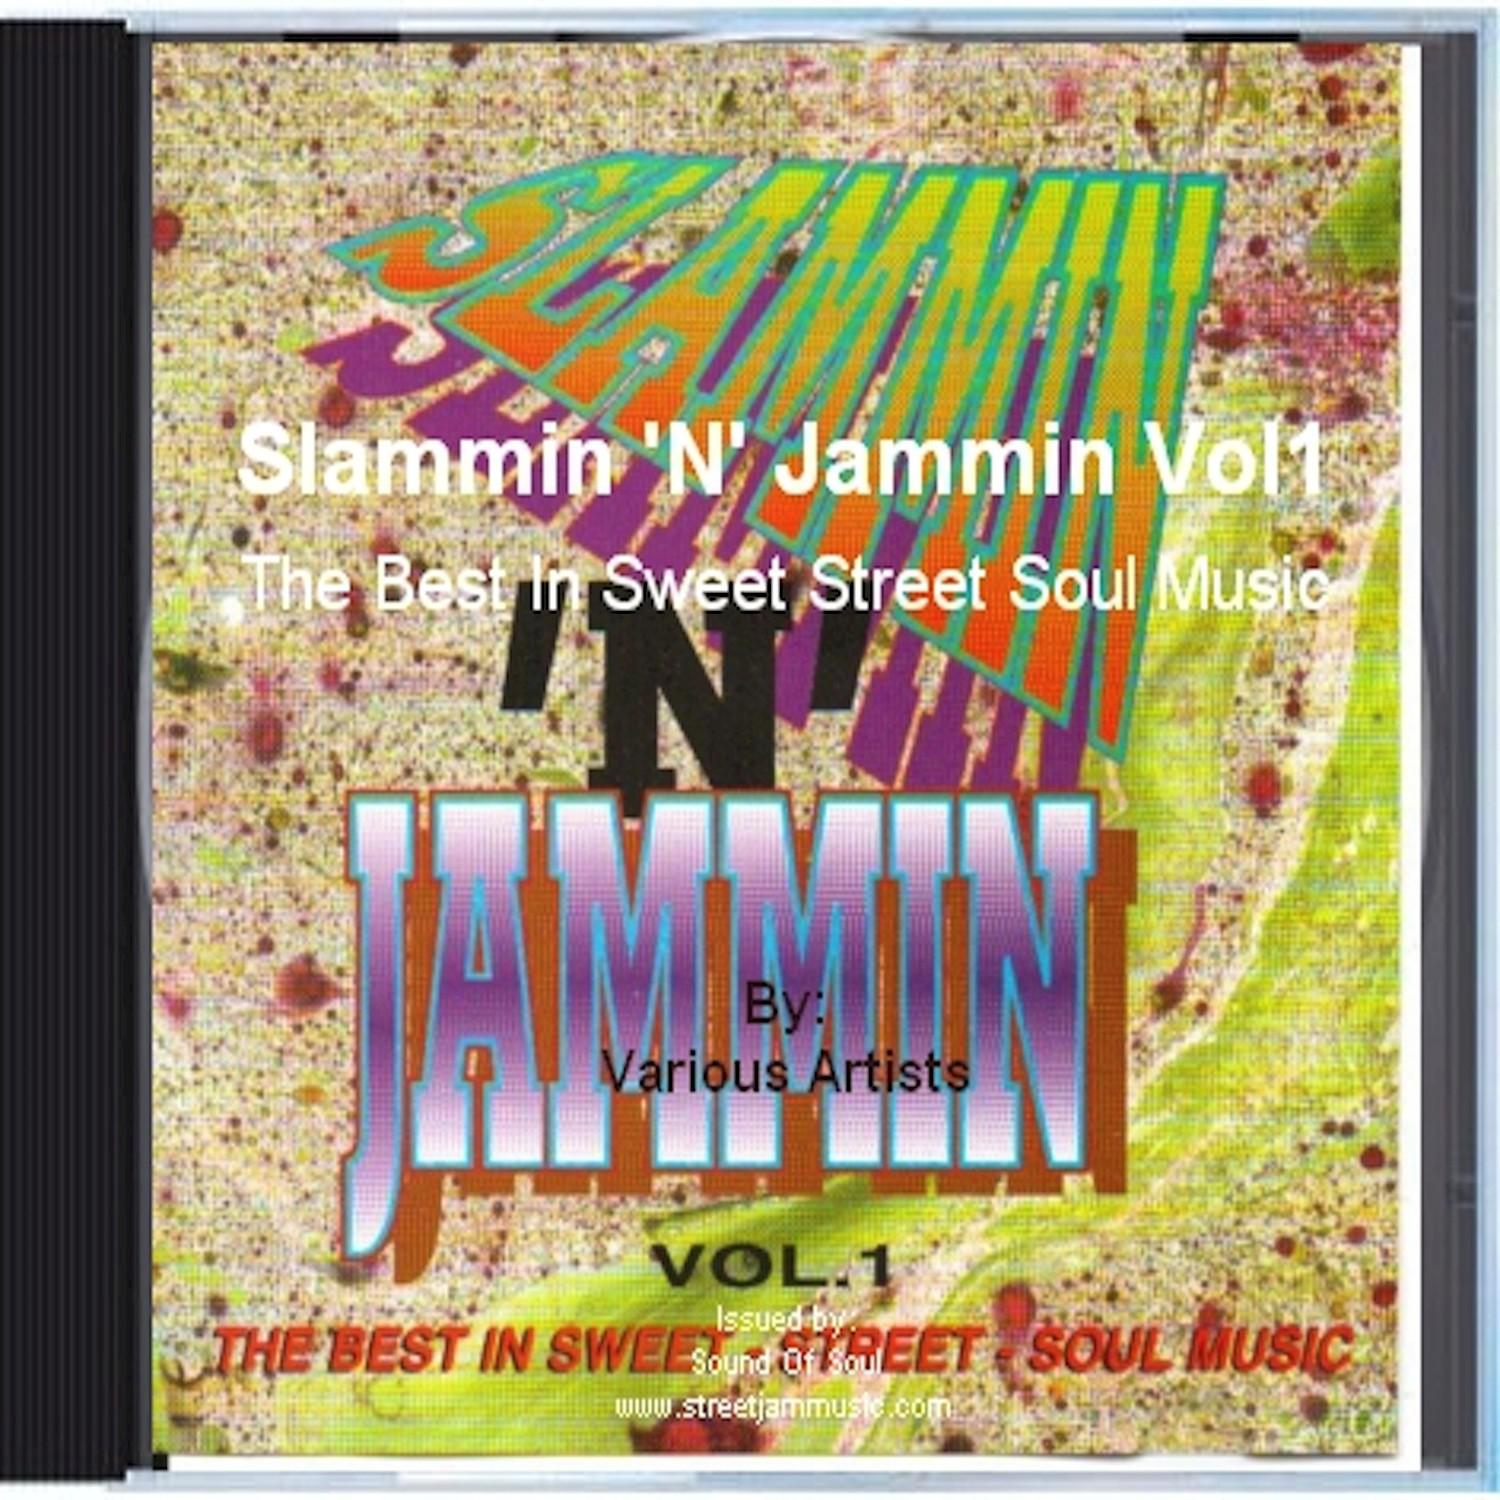 Slammin 'N' Jammin Vol1